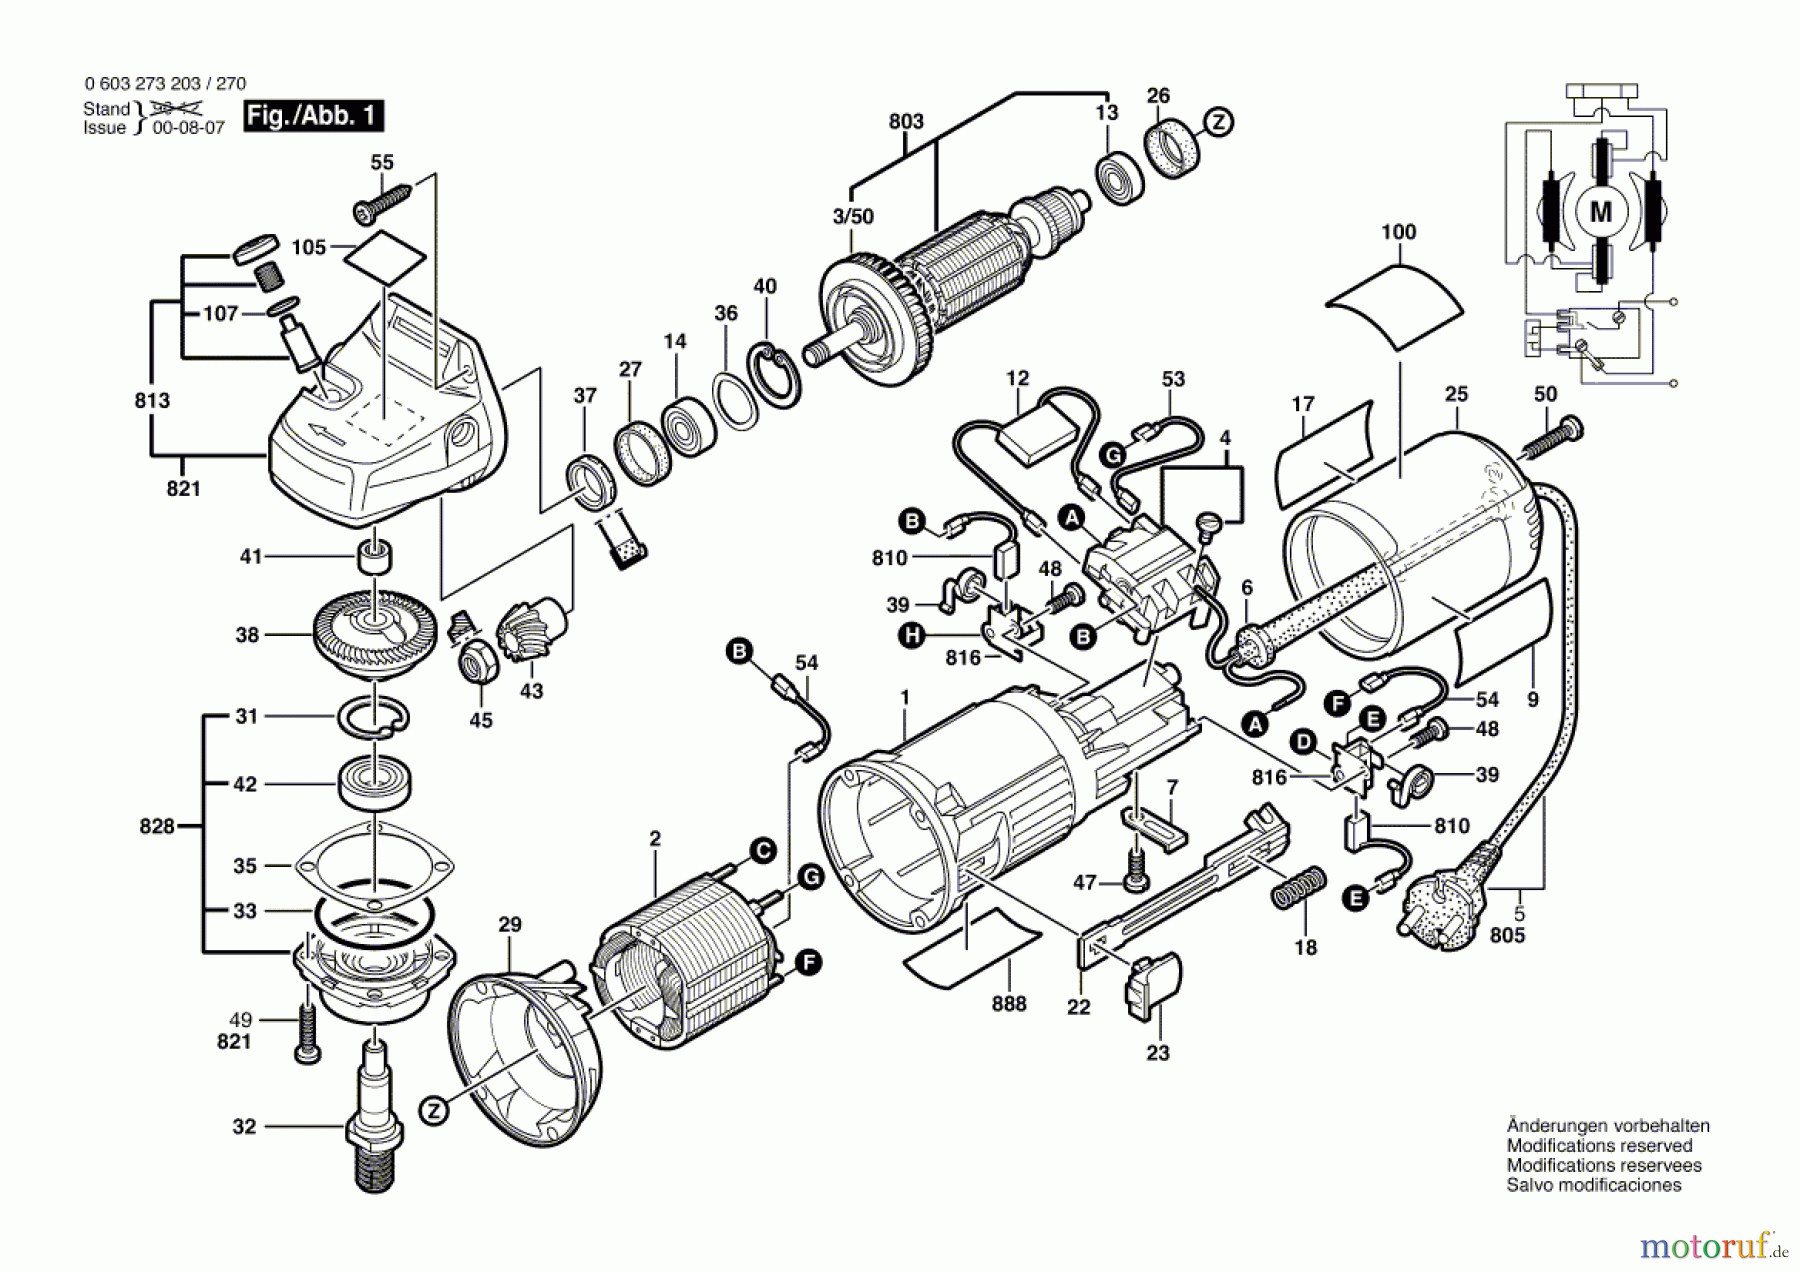  Bosch Werkzeug Winkelschleifer PWS 710 Seite 1